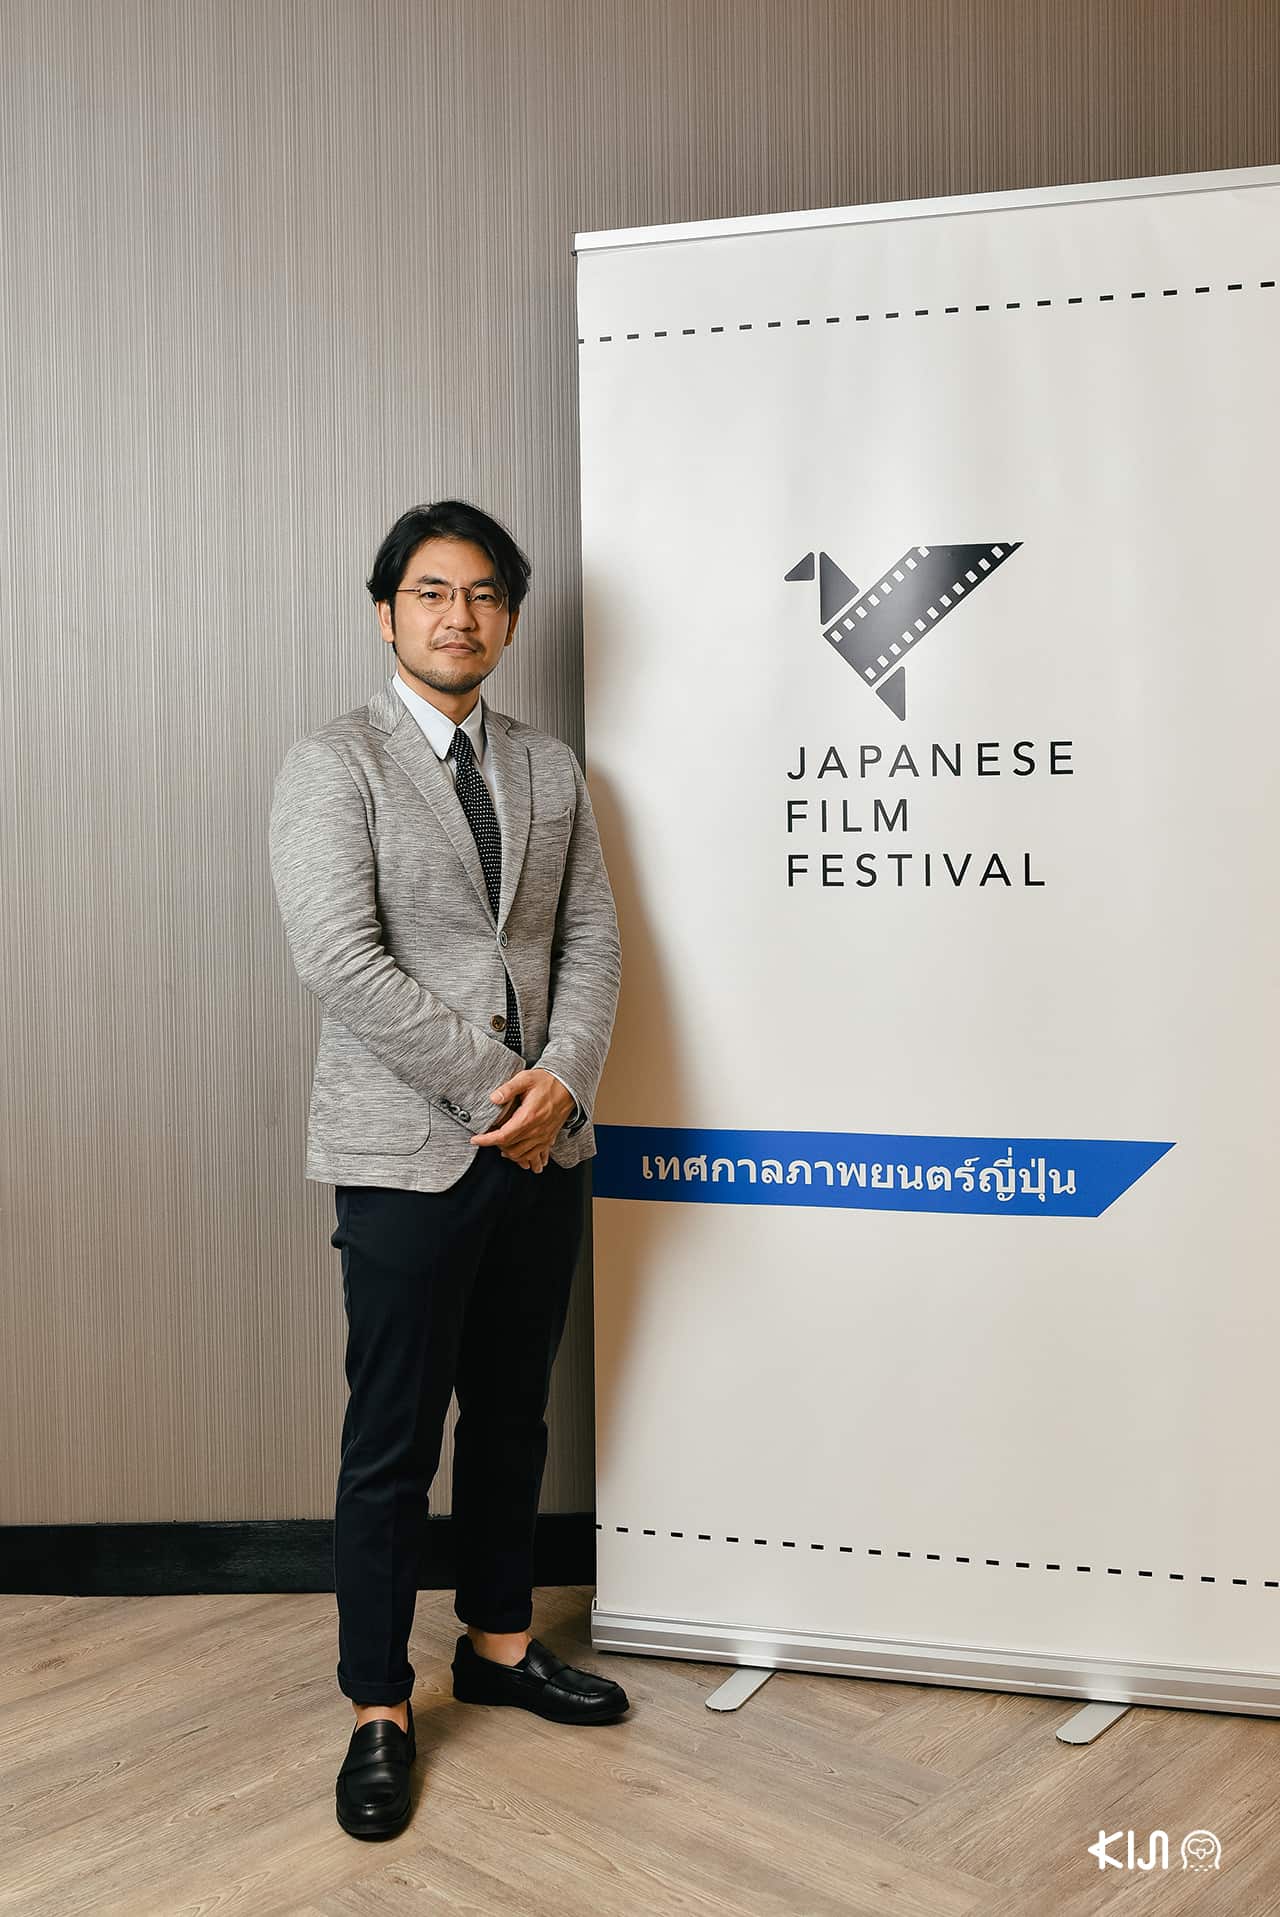 ผู้กำกับและเขียนบทชื่อดังจากเรื่อง “Chihayafuru” ที่ฉายในงานเทศกาลภาพยนตร์ญี่ปุ่น (Japanese Film Festival 2019)